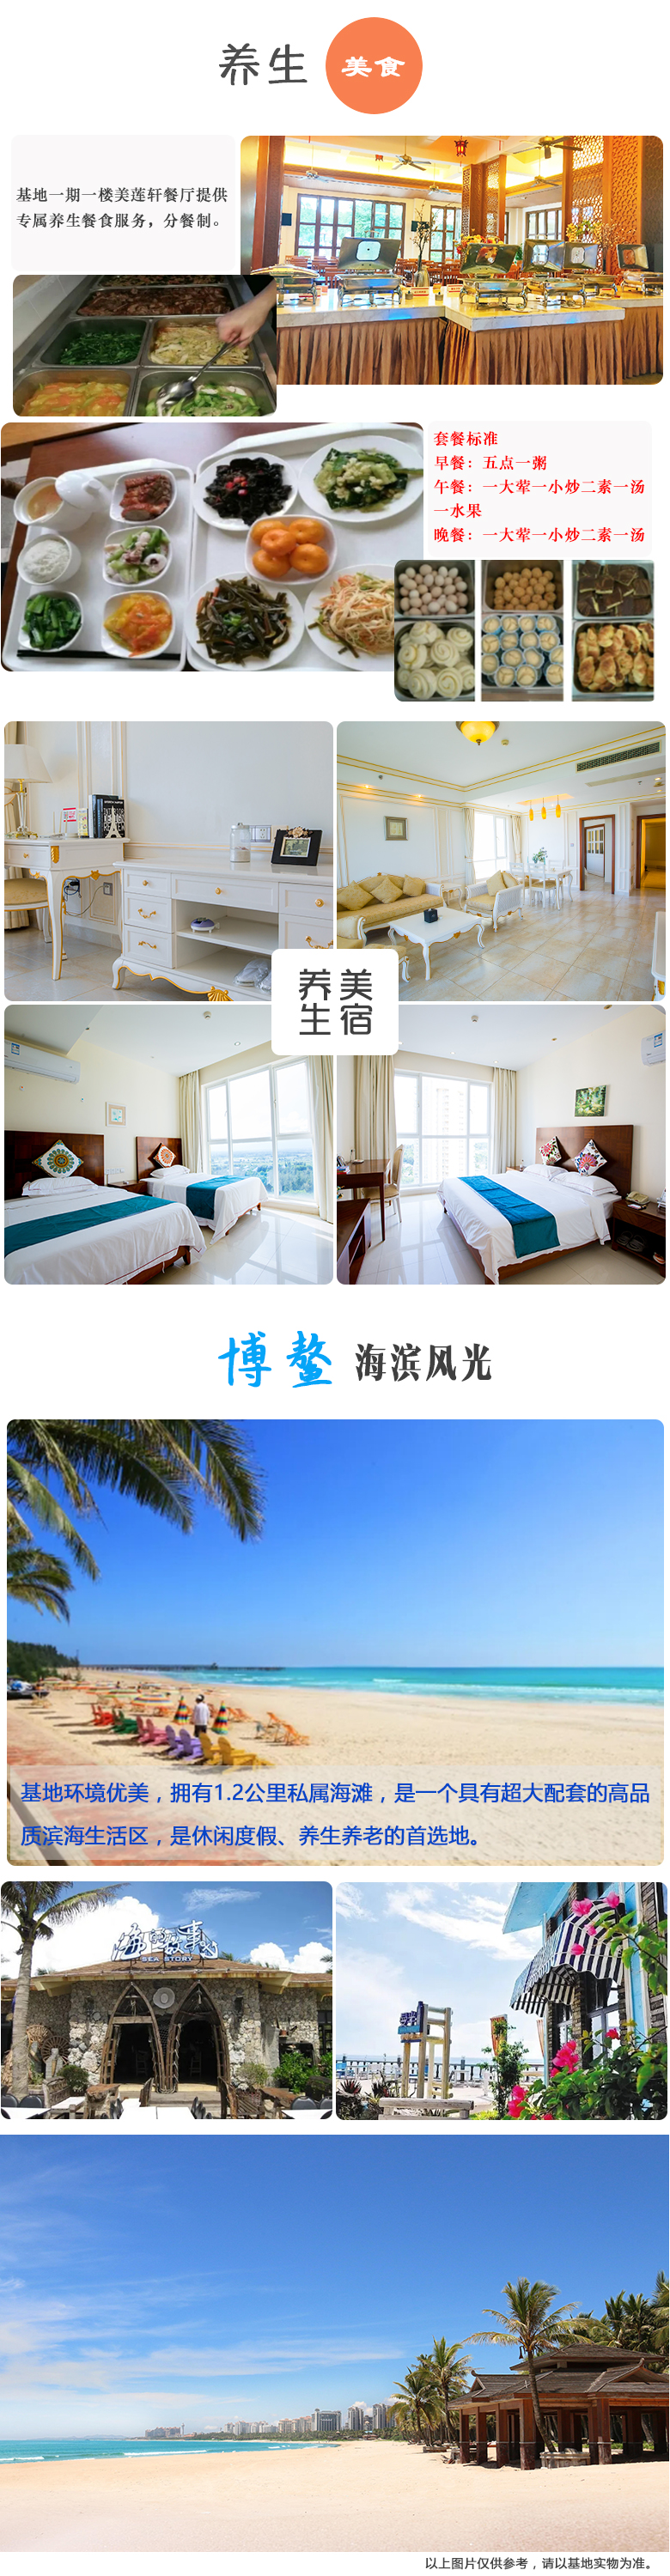 【遨游康养】海南旅居新生活-博鳌海景度假公寓15-30日游